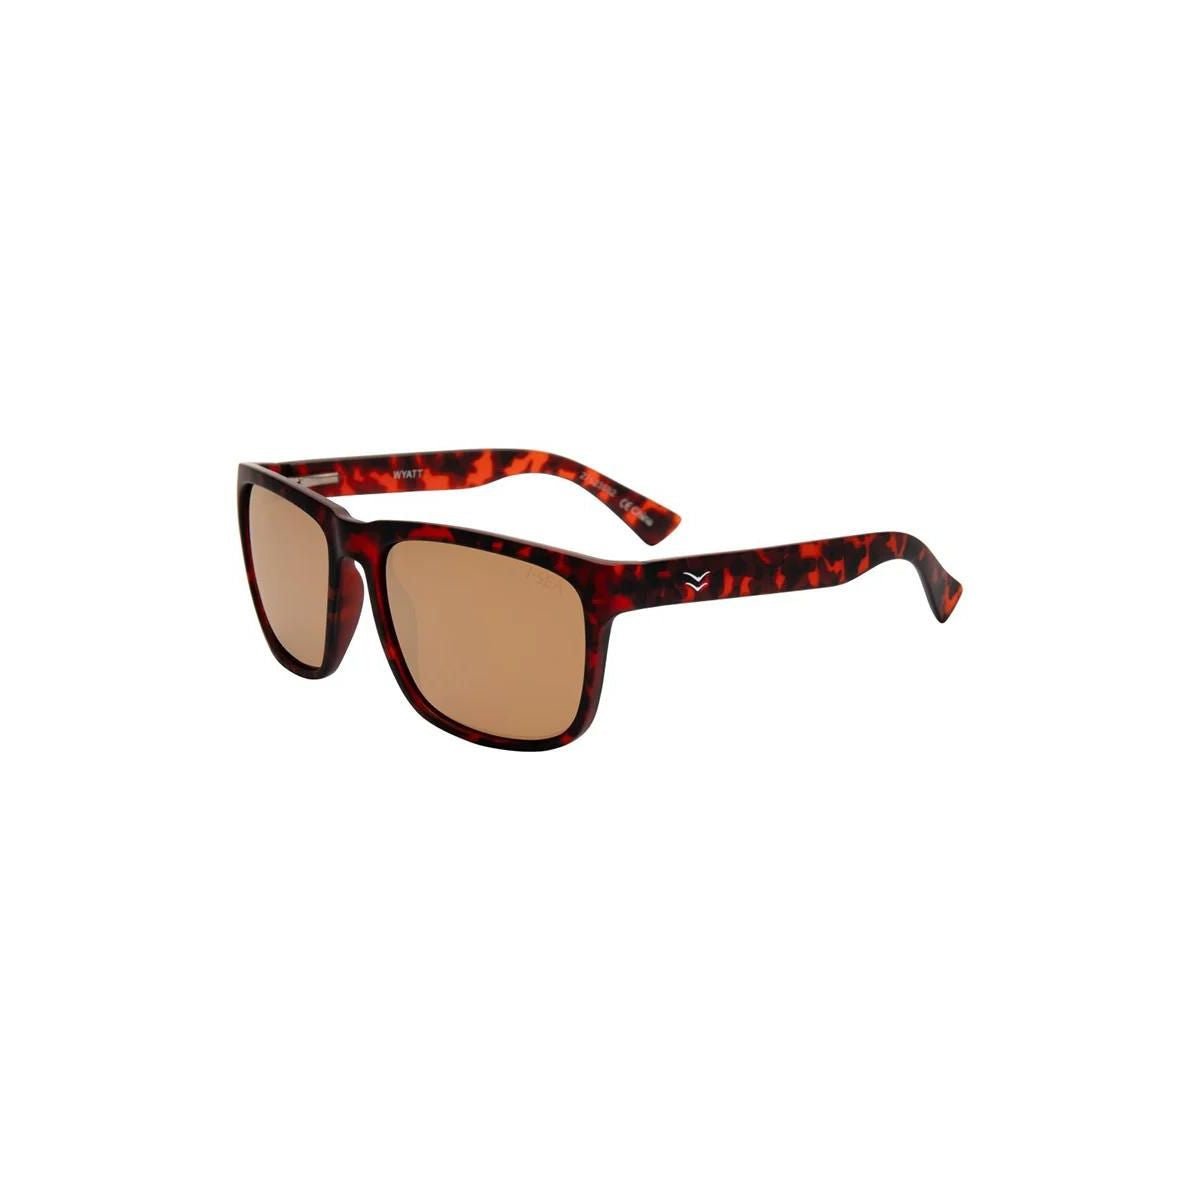 I-Sea Wyatt Sunglasses in Tort/Copper - BoardCo